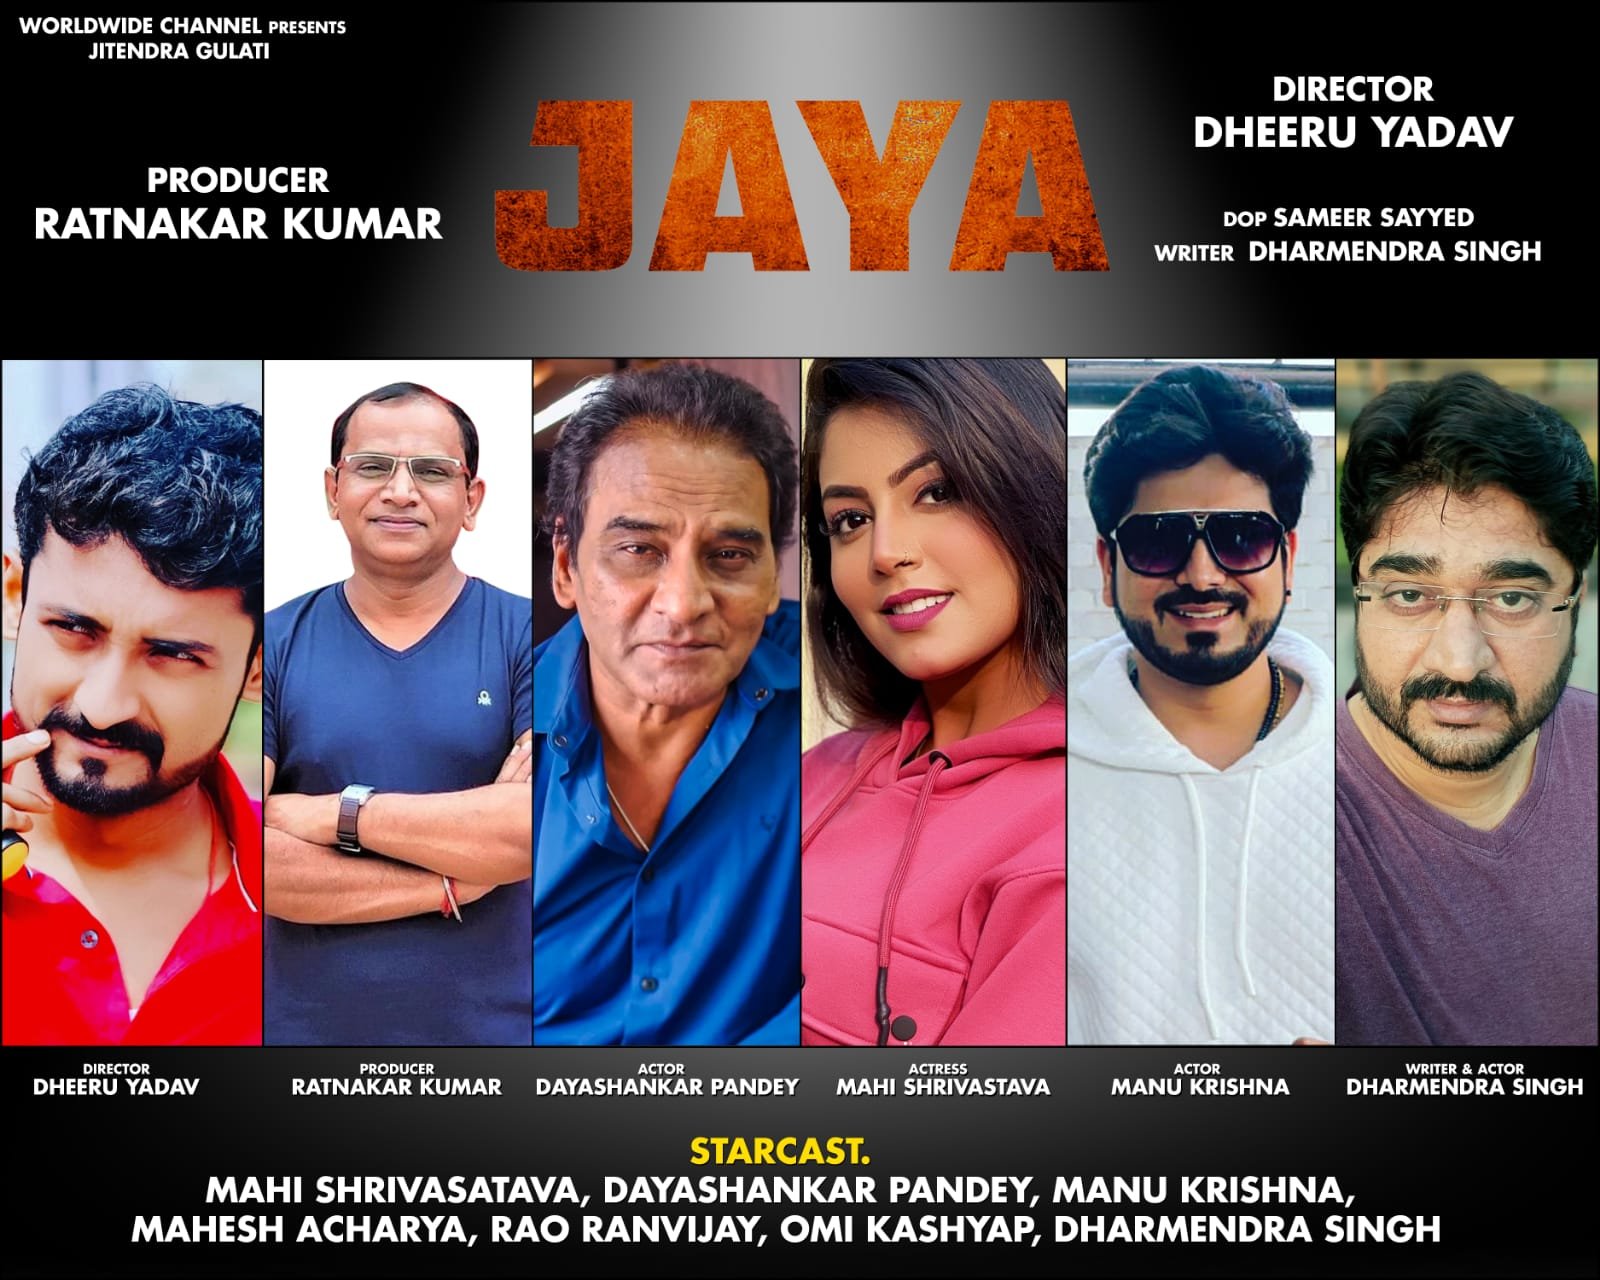 Bhojpuri Film: दयाशंकर पांडेय और माही श्रीवास्तव करेंगे निर्माता रत्नाकर कुमार की फिल्म 'जया' में अदाकारी